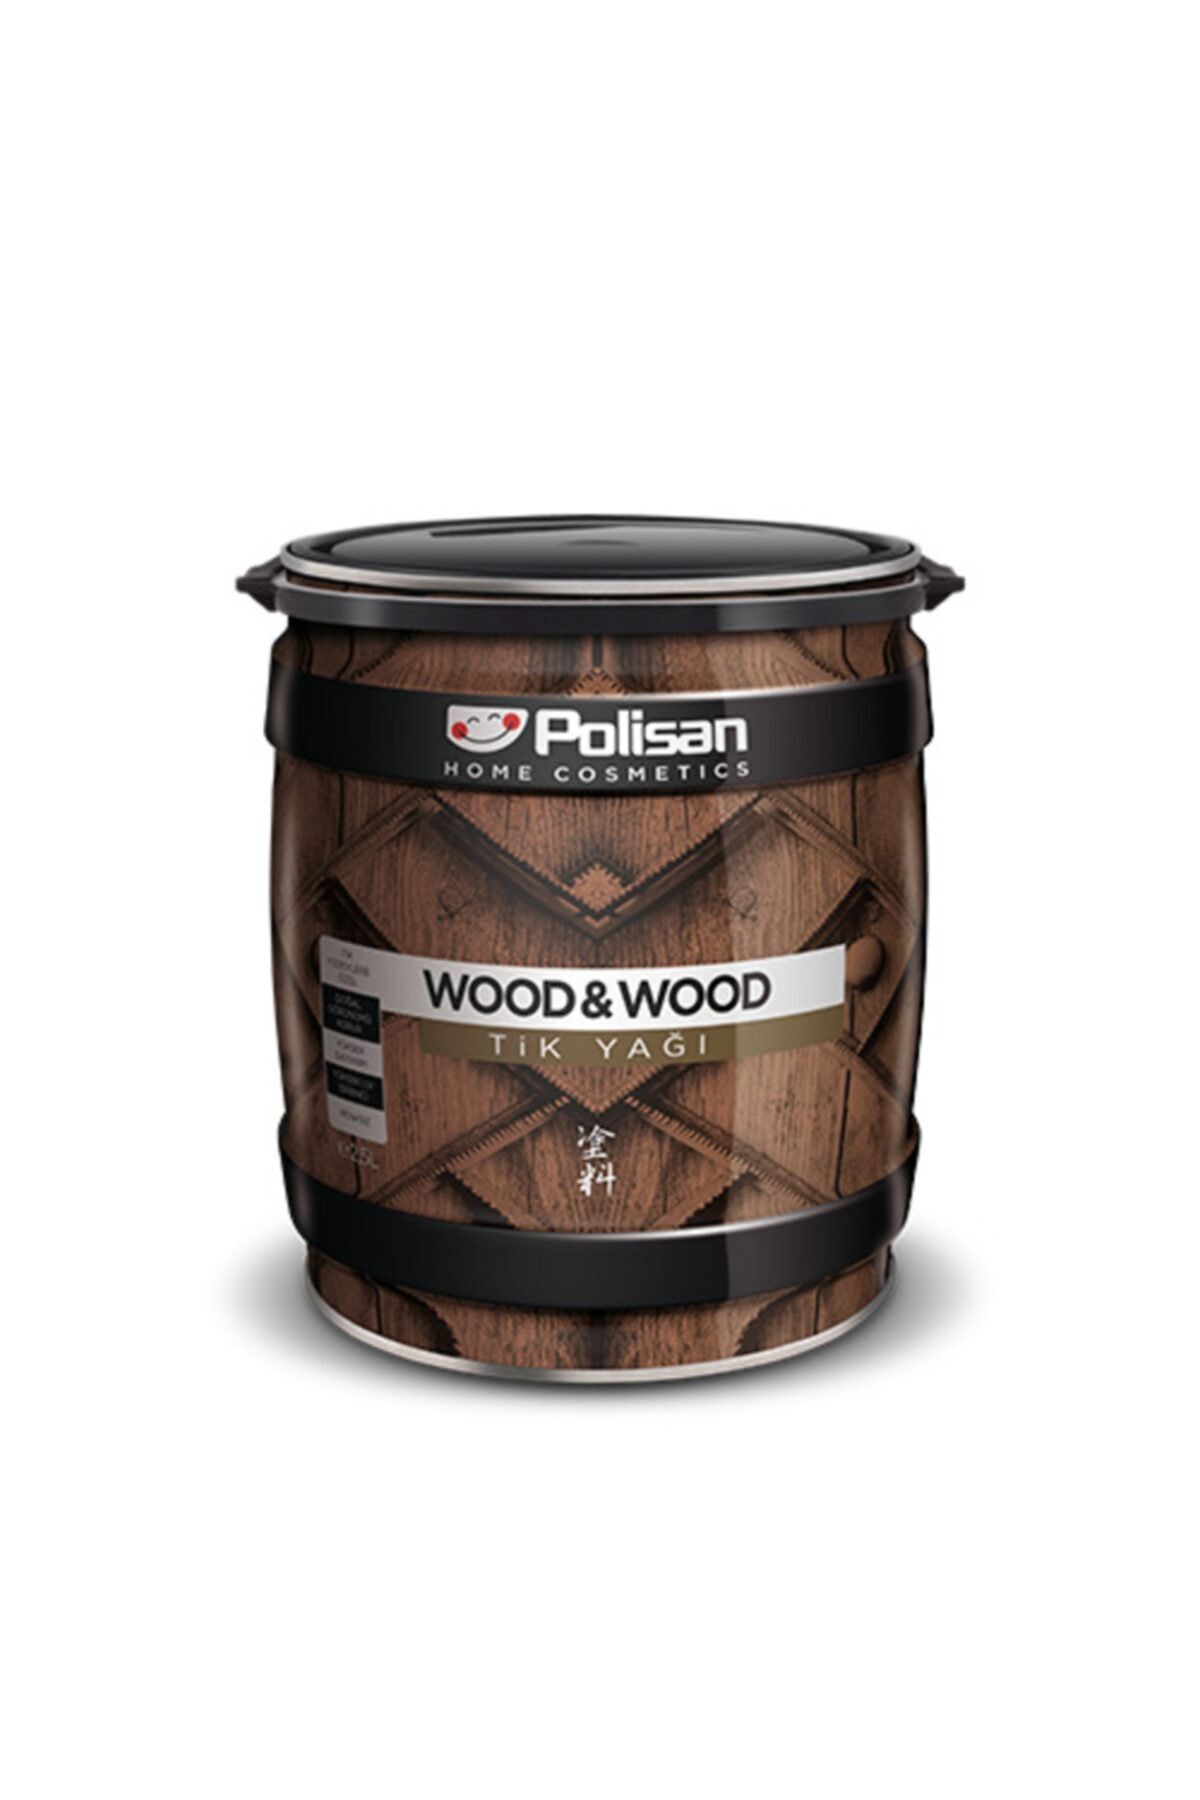 Polisan Wood&wood Anti Aging Tik Yağı Şeffaf Renksiz 0,75 Lt